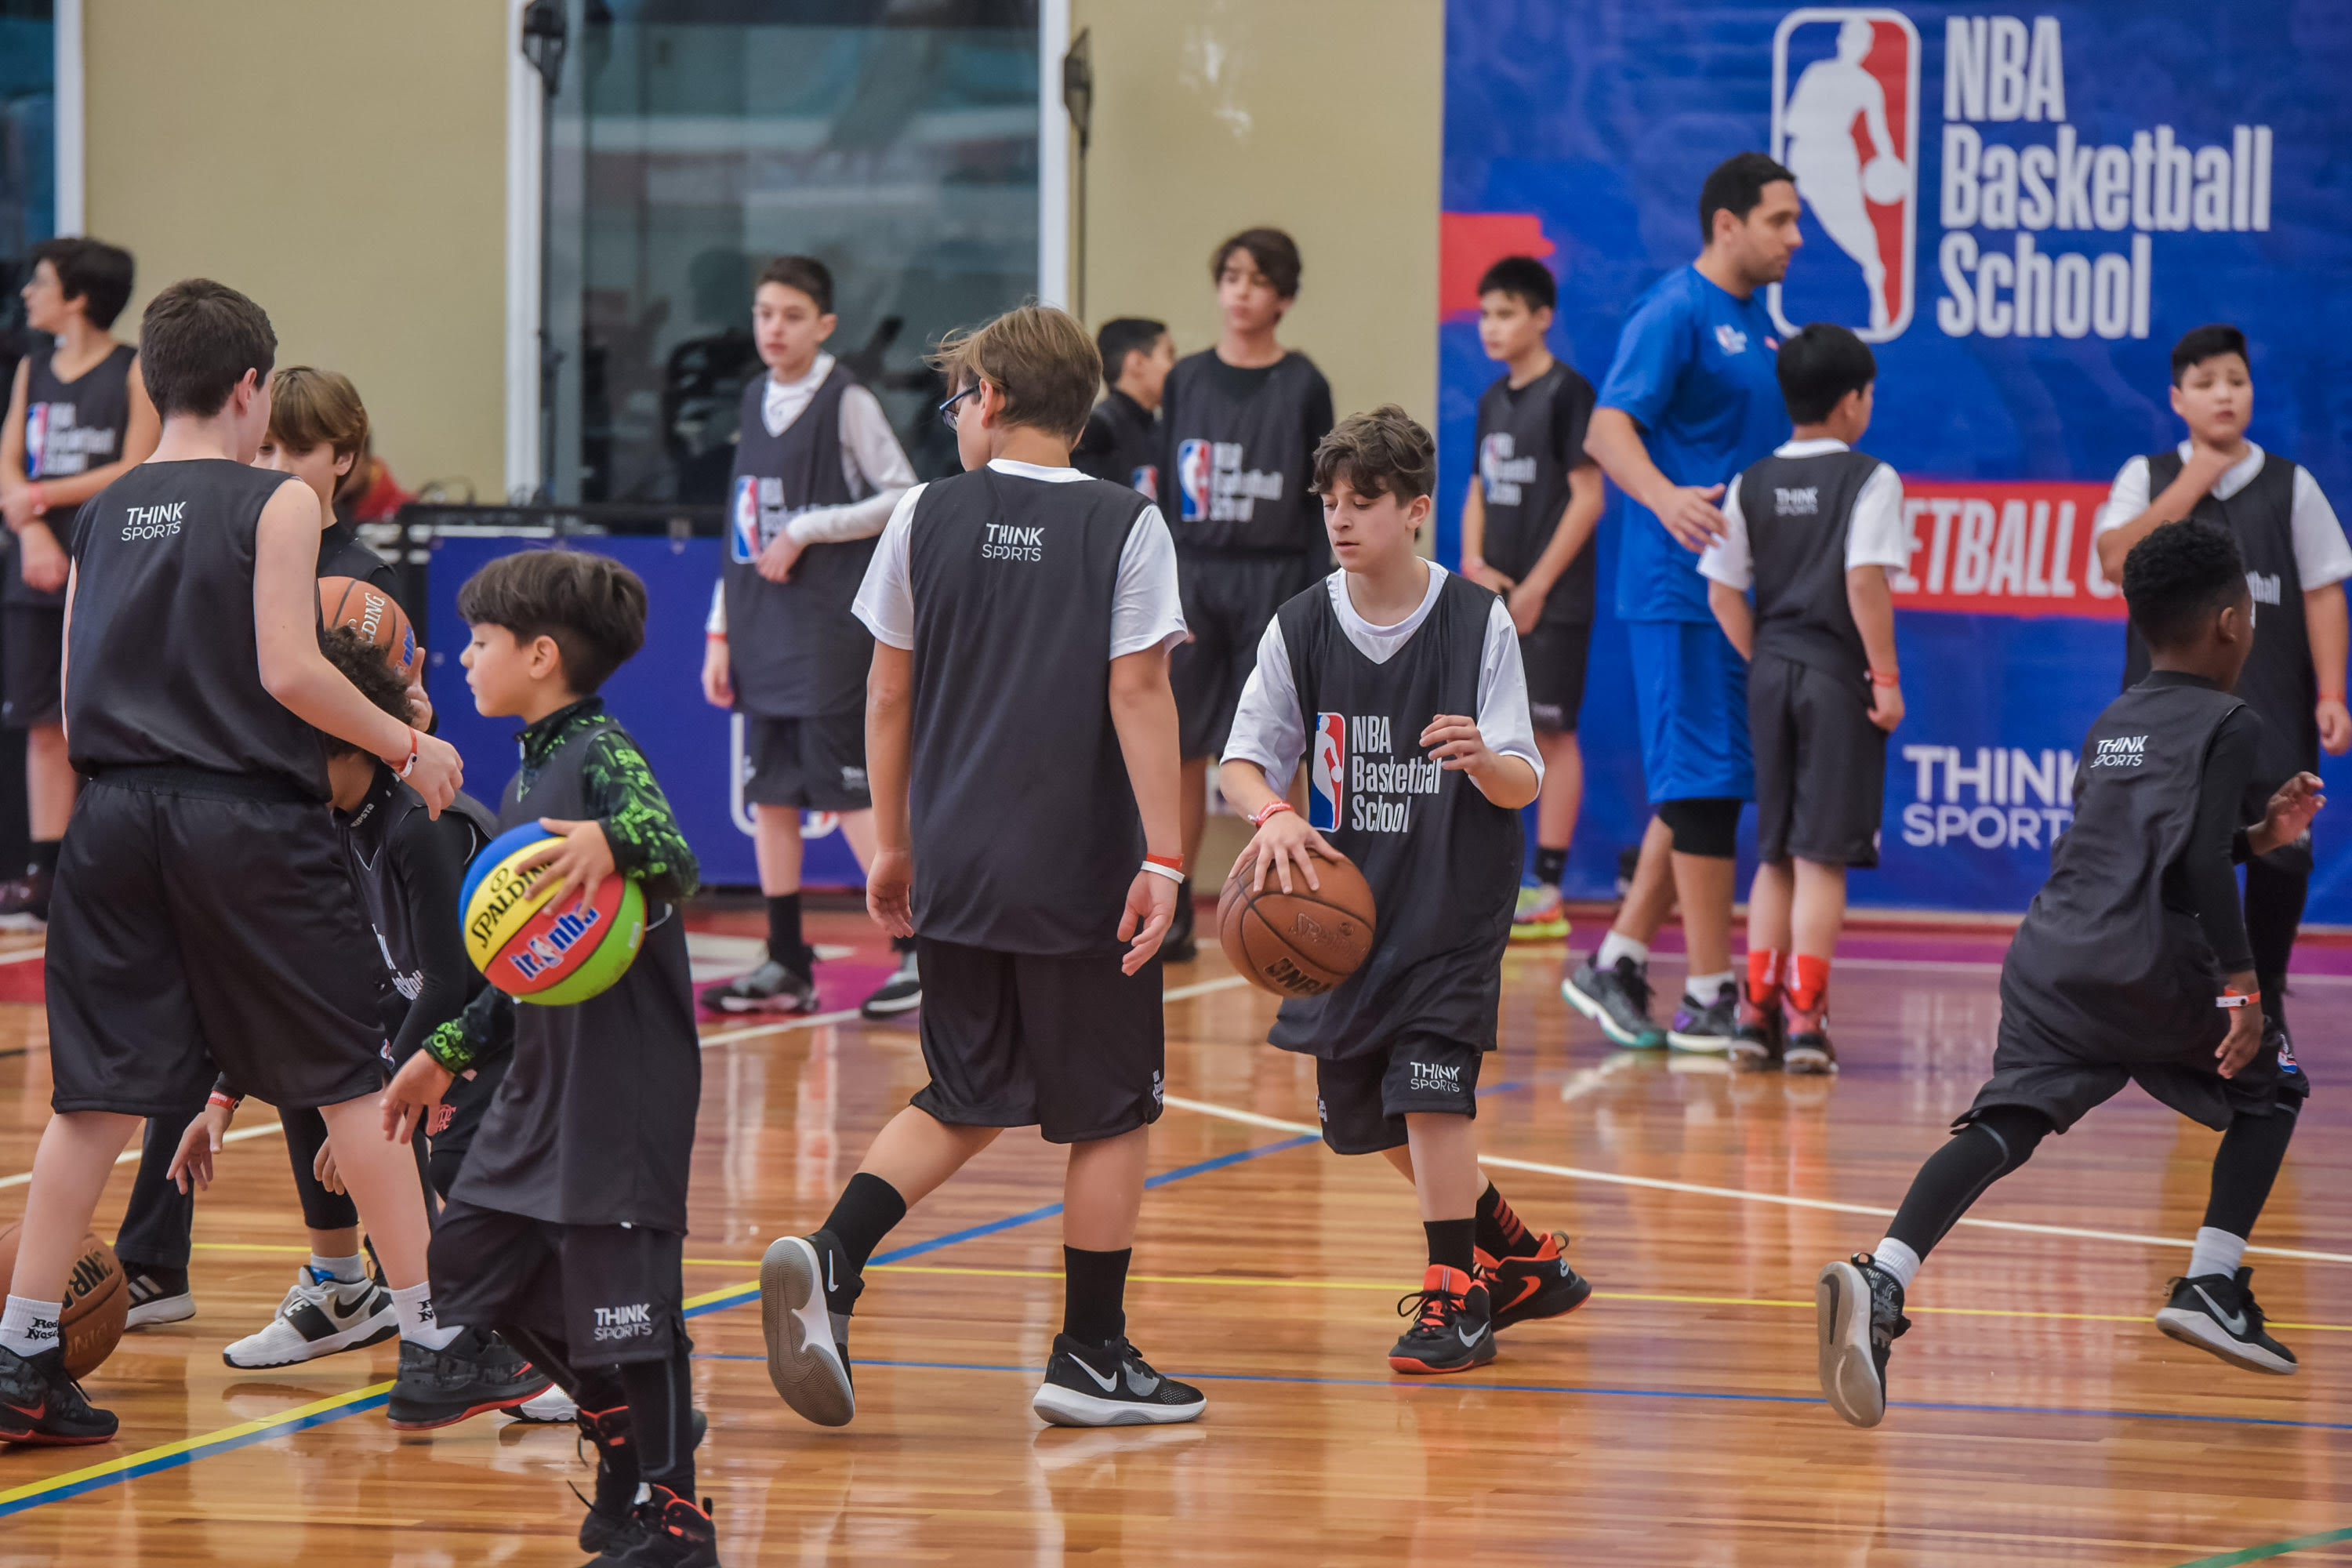 'Técnicos' Alex e Marcelinho destacam 'troca de experiências' no I NBA Basketball School Camp